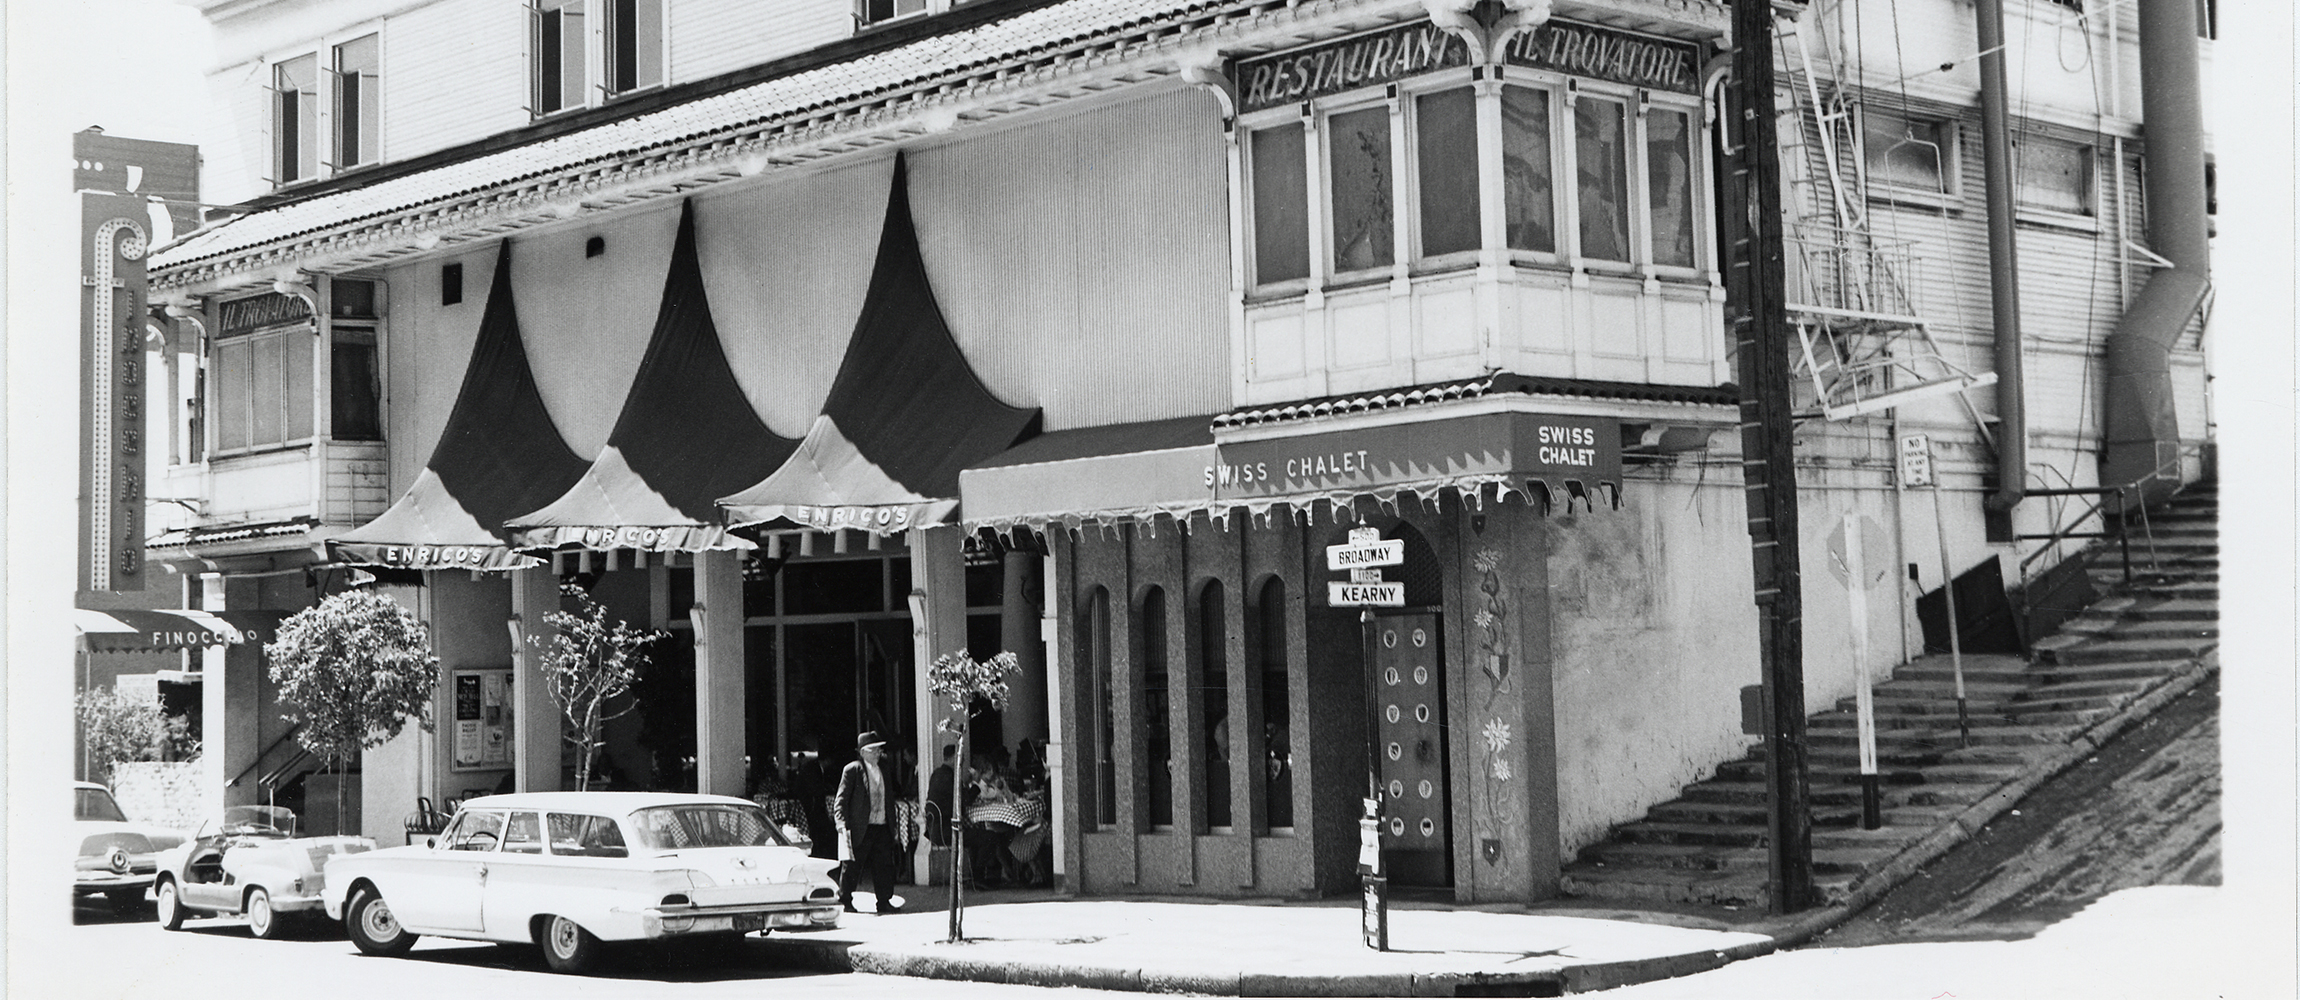 Club Nocturno Finnochio’s, 506 Broadway, 1964